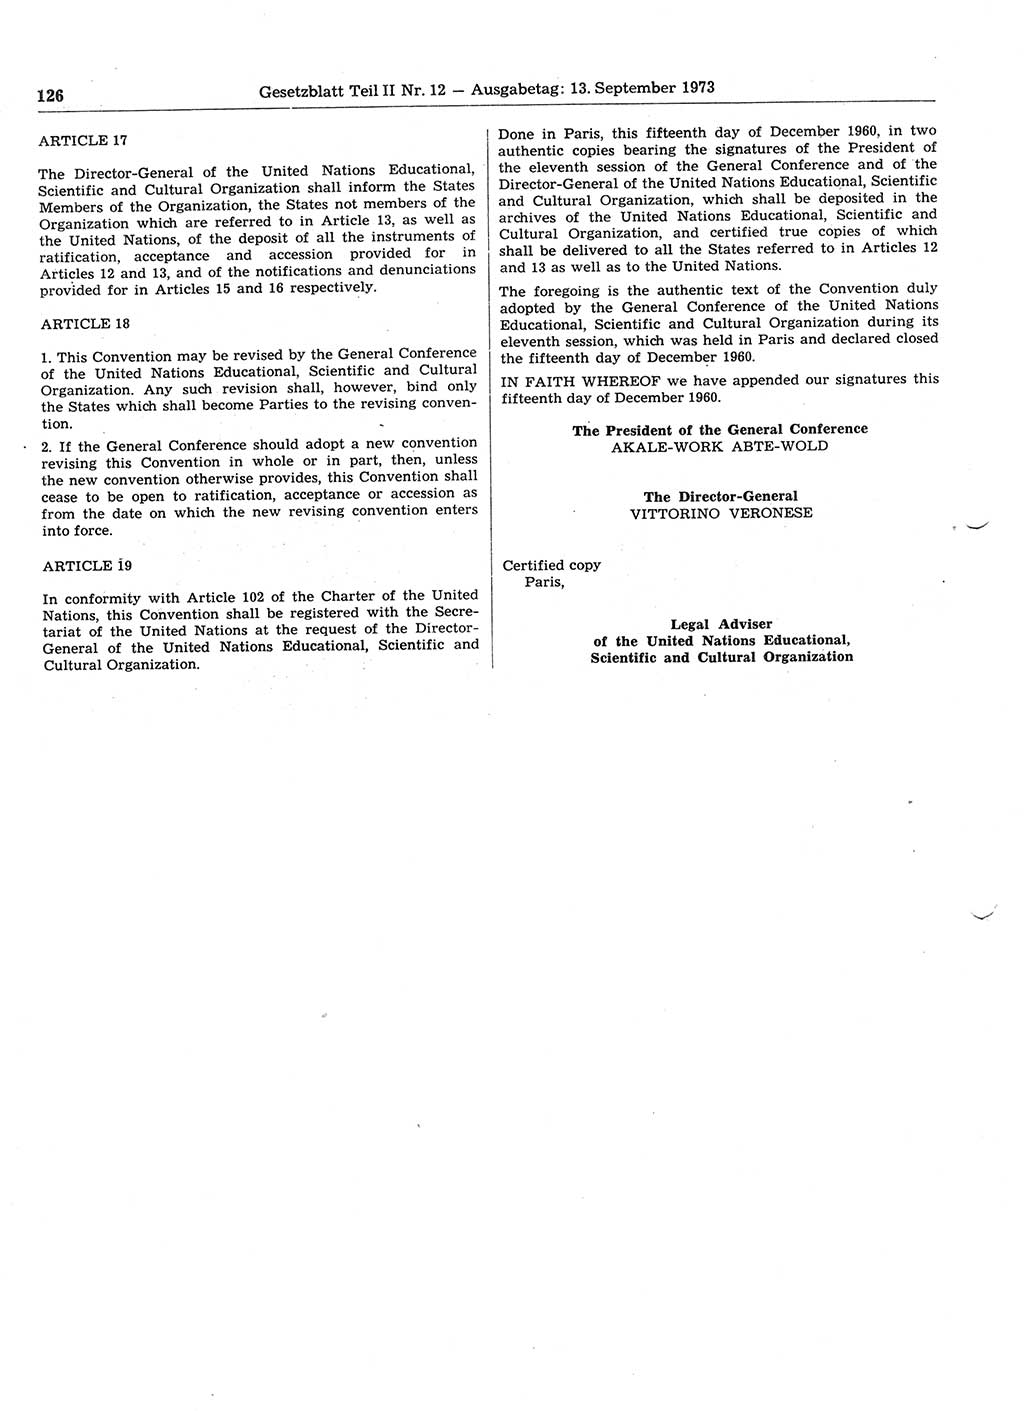 Gesetzblatt (GBl.) der Deutschen Demokratischen Republik (DDR) Teil ⅠⅠ 1973, Seite 126 (GBl. DDR ⅠⅠ 1973, S. 126)